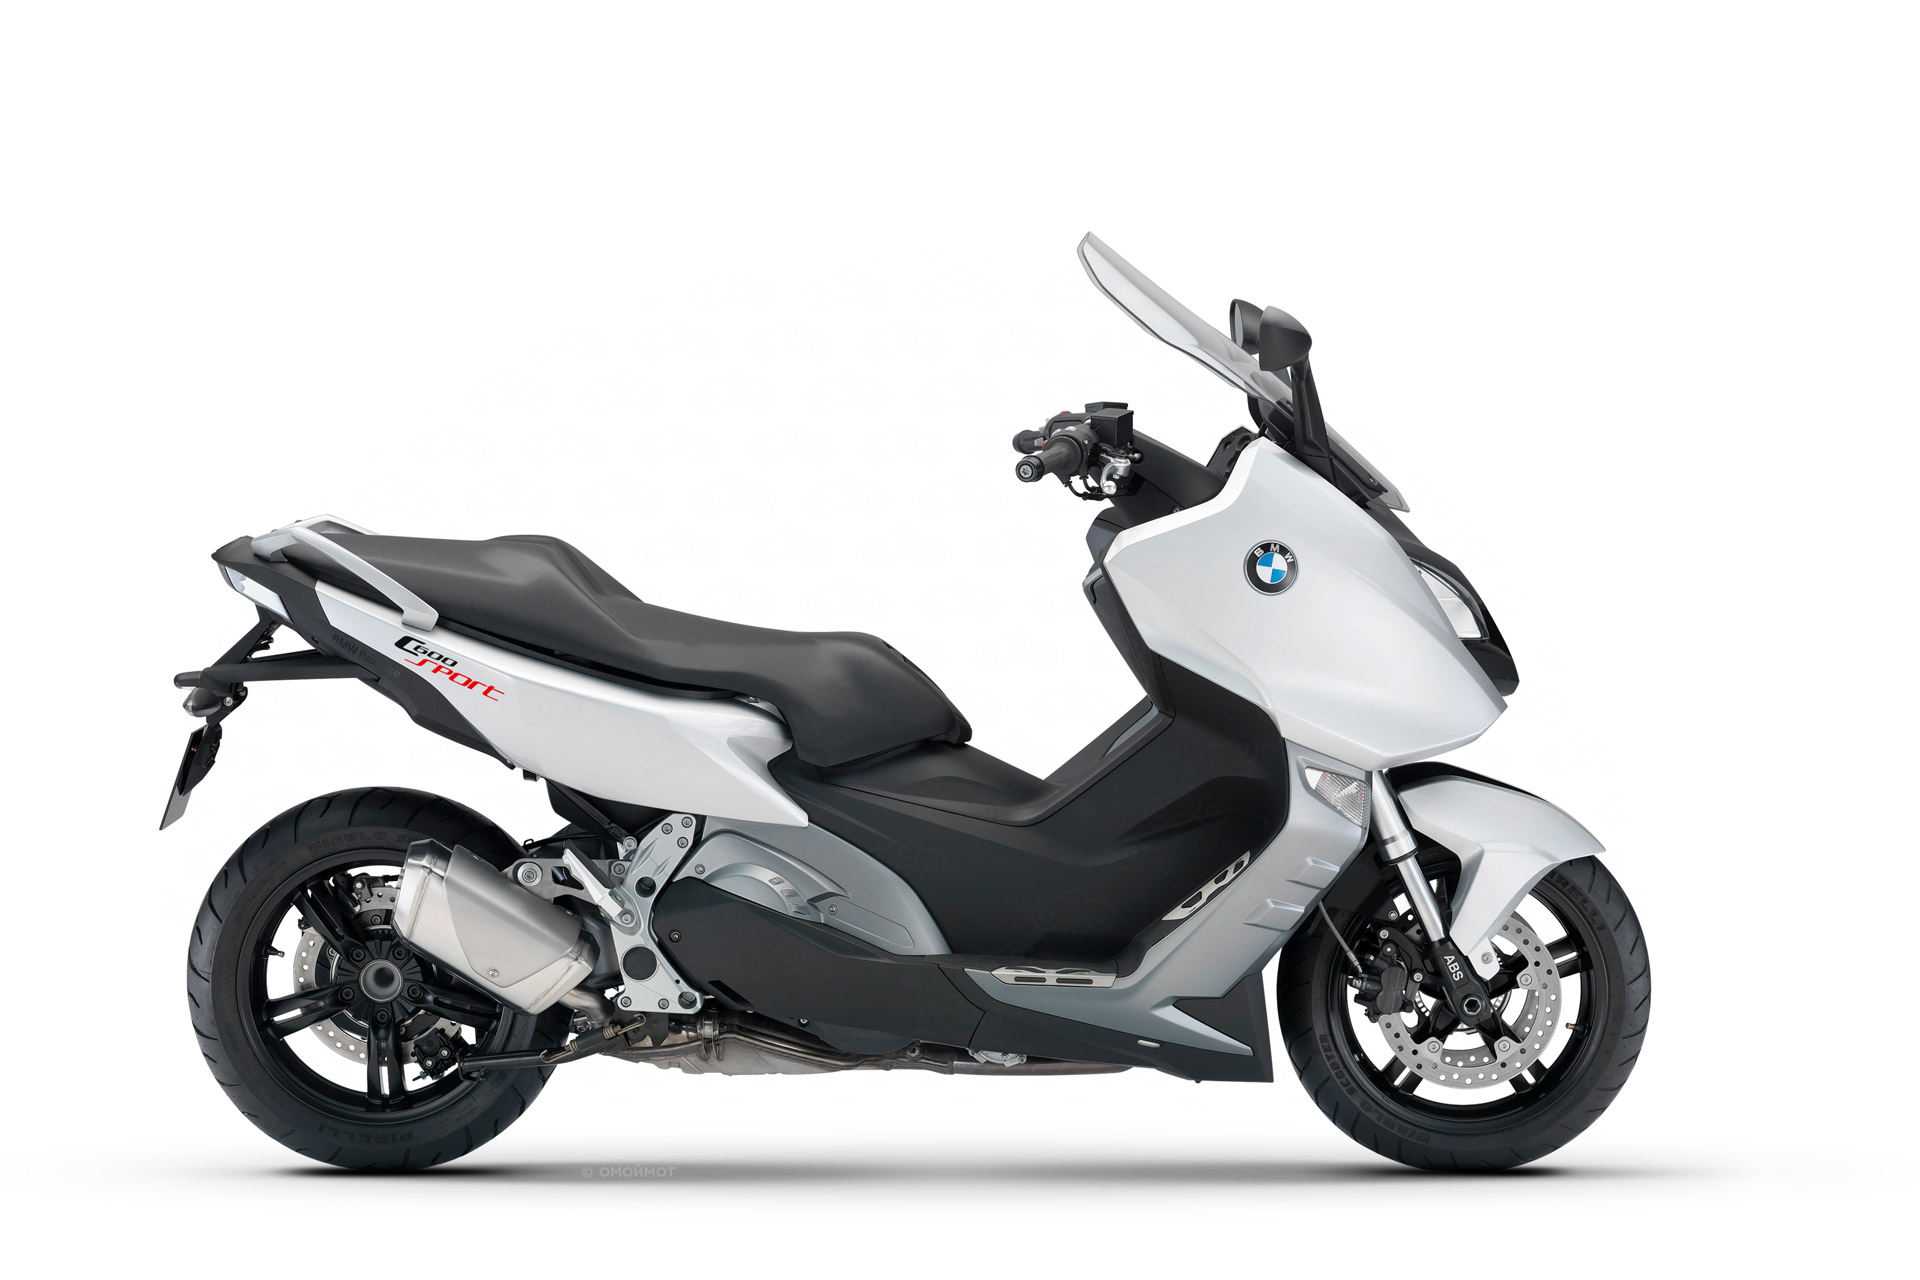 Скутер BMW C600 Sport - цена, фото и характеристики нового скутера БМВ ...